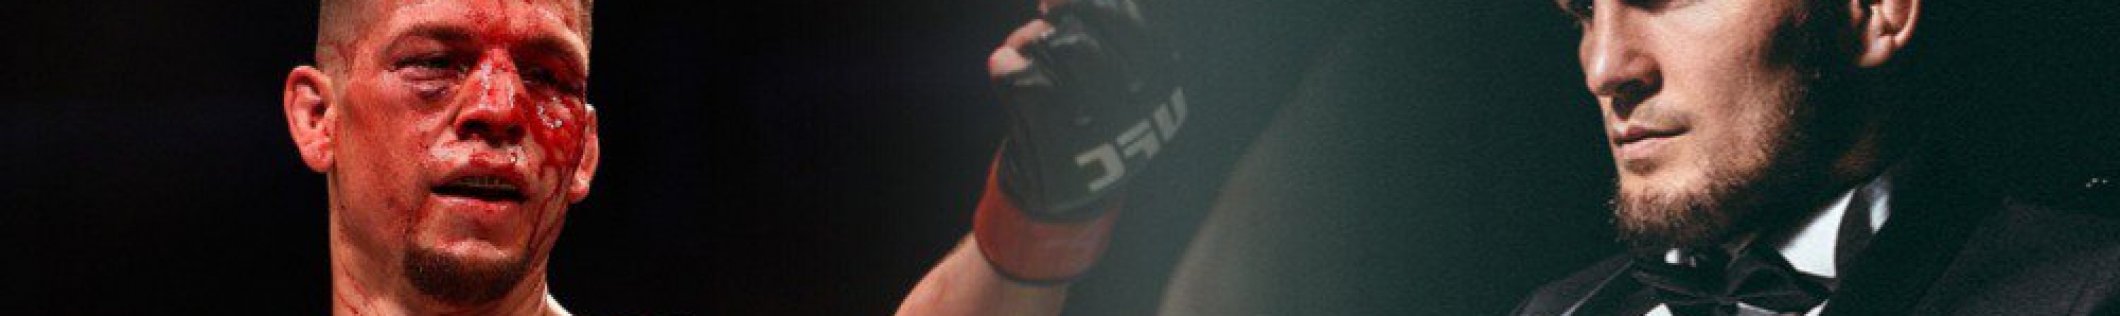 Диаз против Хабиба: подробности стычки бойцов на UFC 239